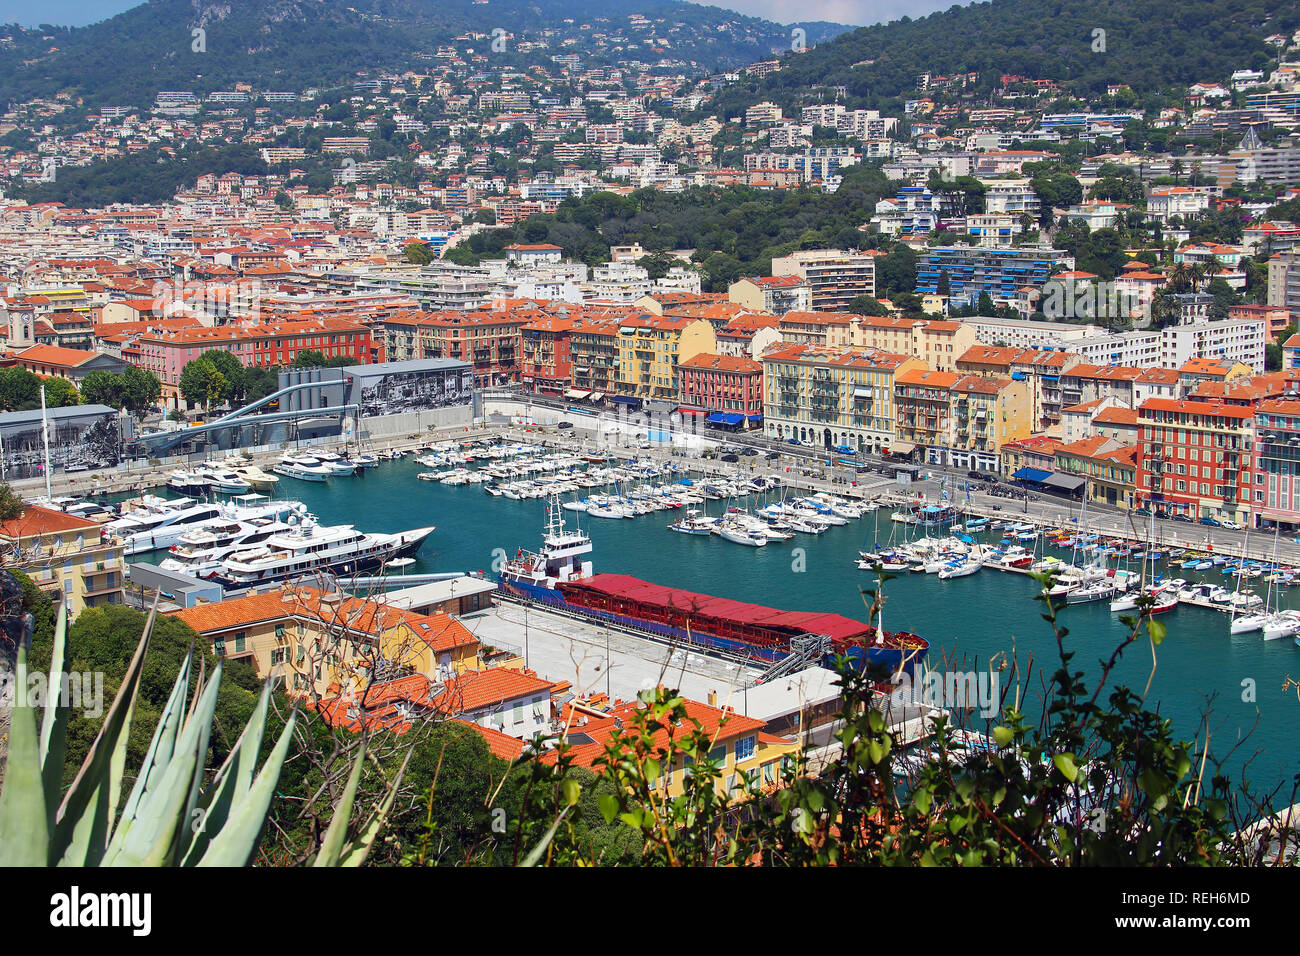 Vue aérienne du port de Nice, Côte d'Azur, France Banque D'Images